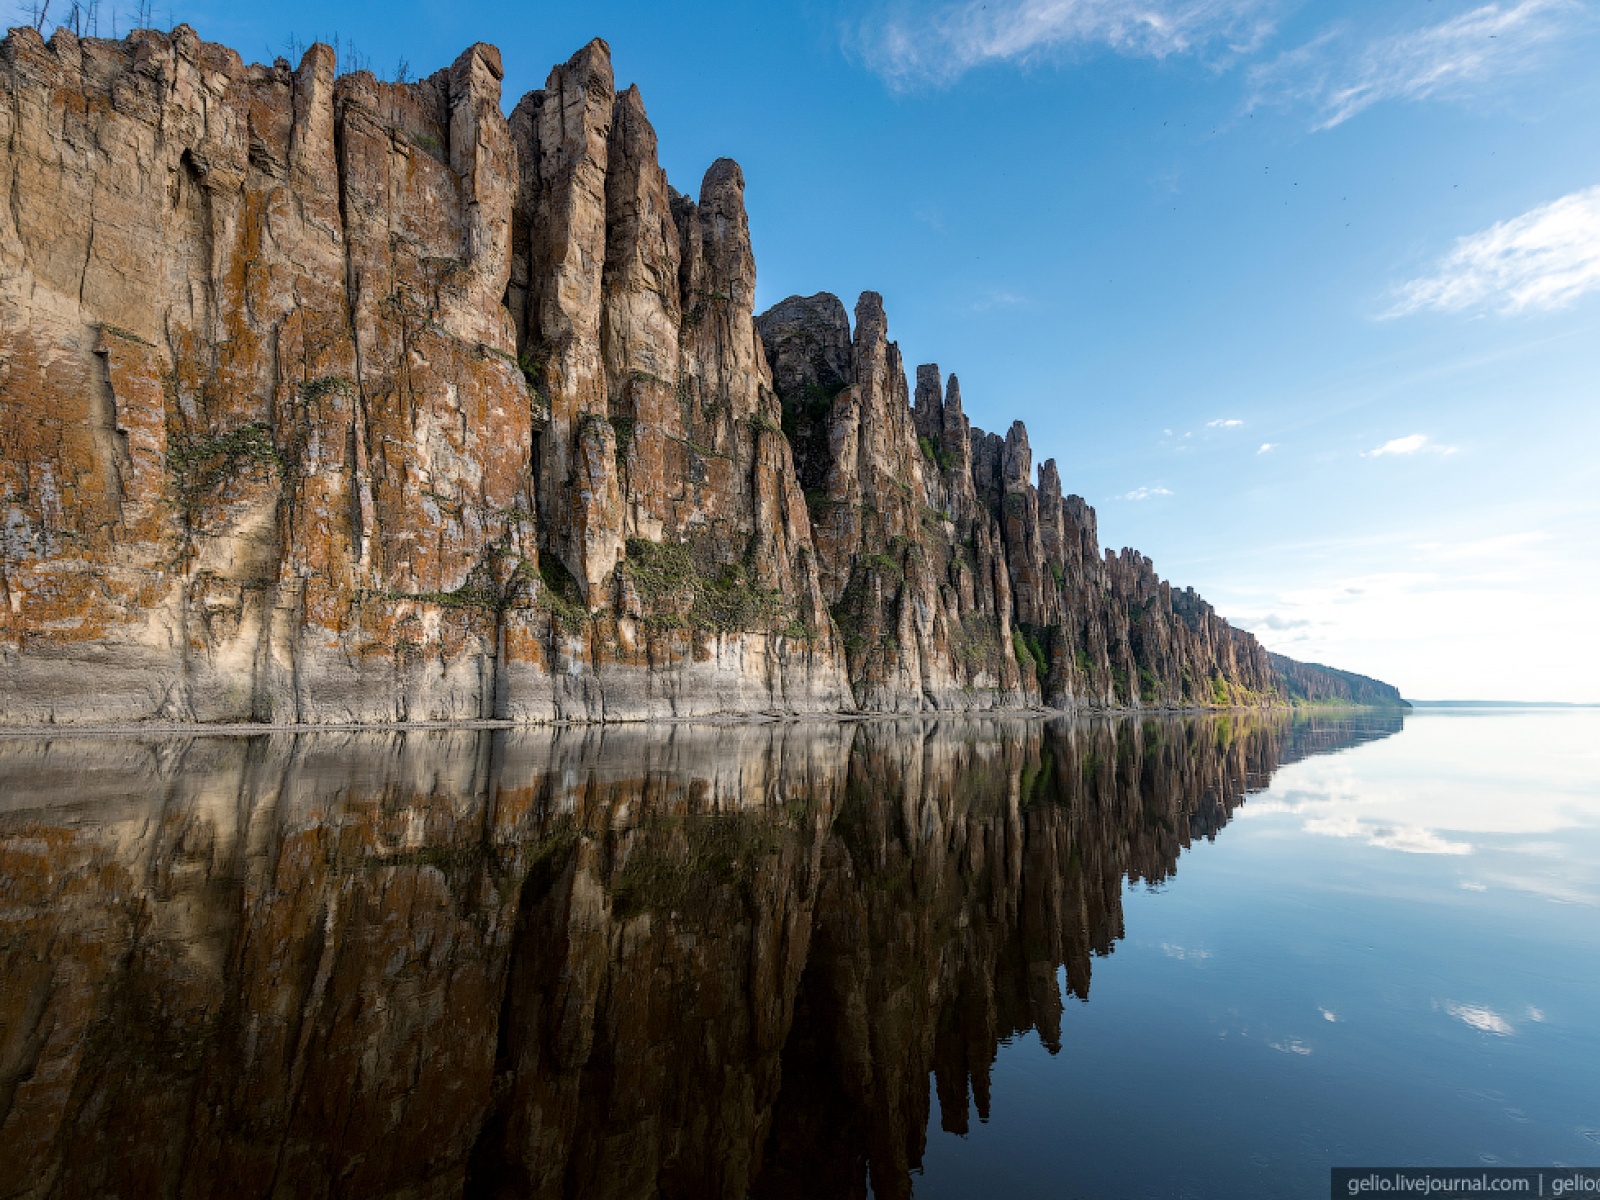 Ленские столбы каменный лес Якутии